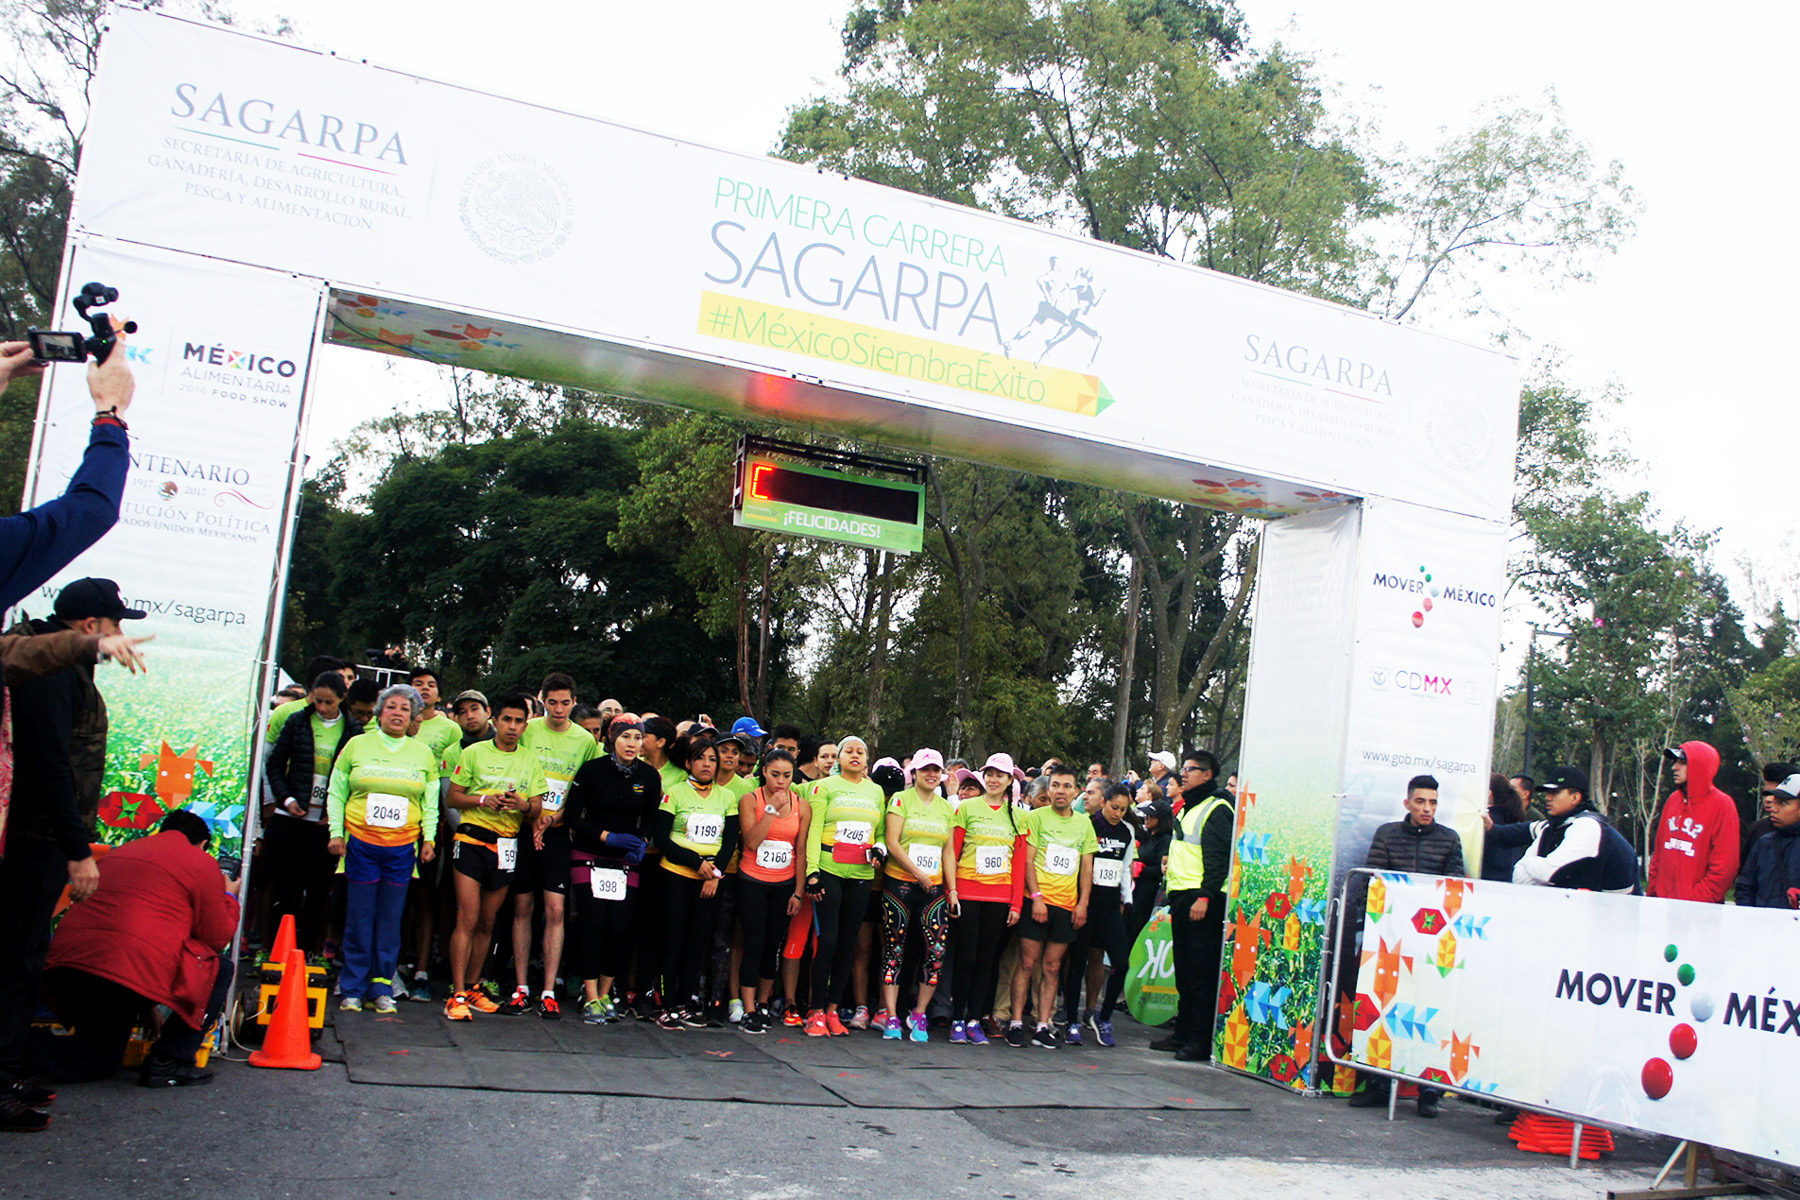 Primera Carrera SAGARPA #MéxicoSiembraÉxito